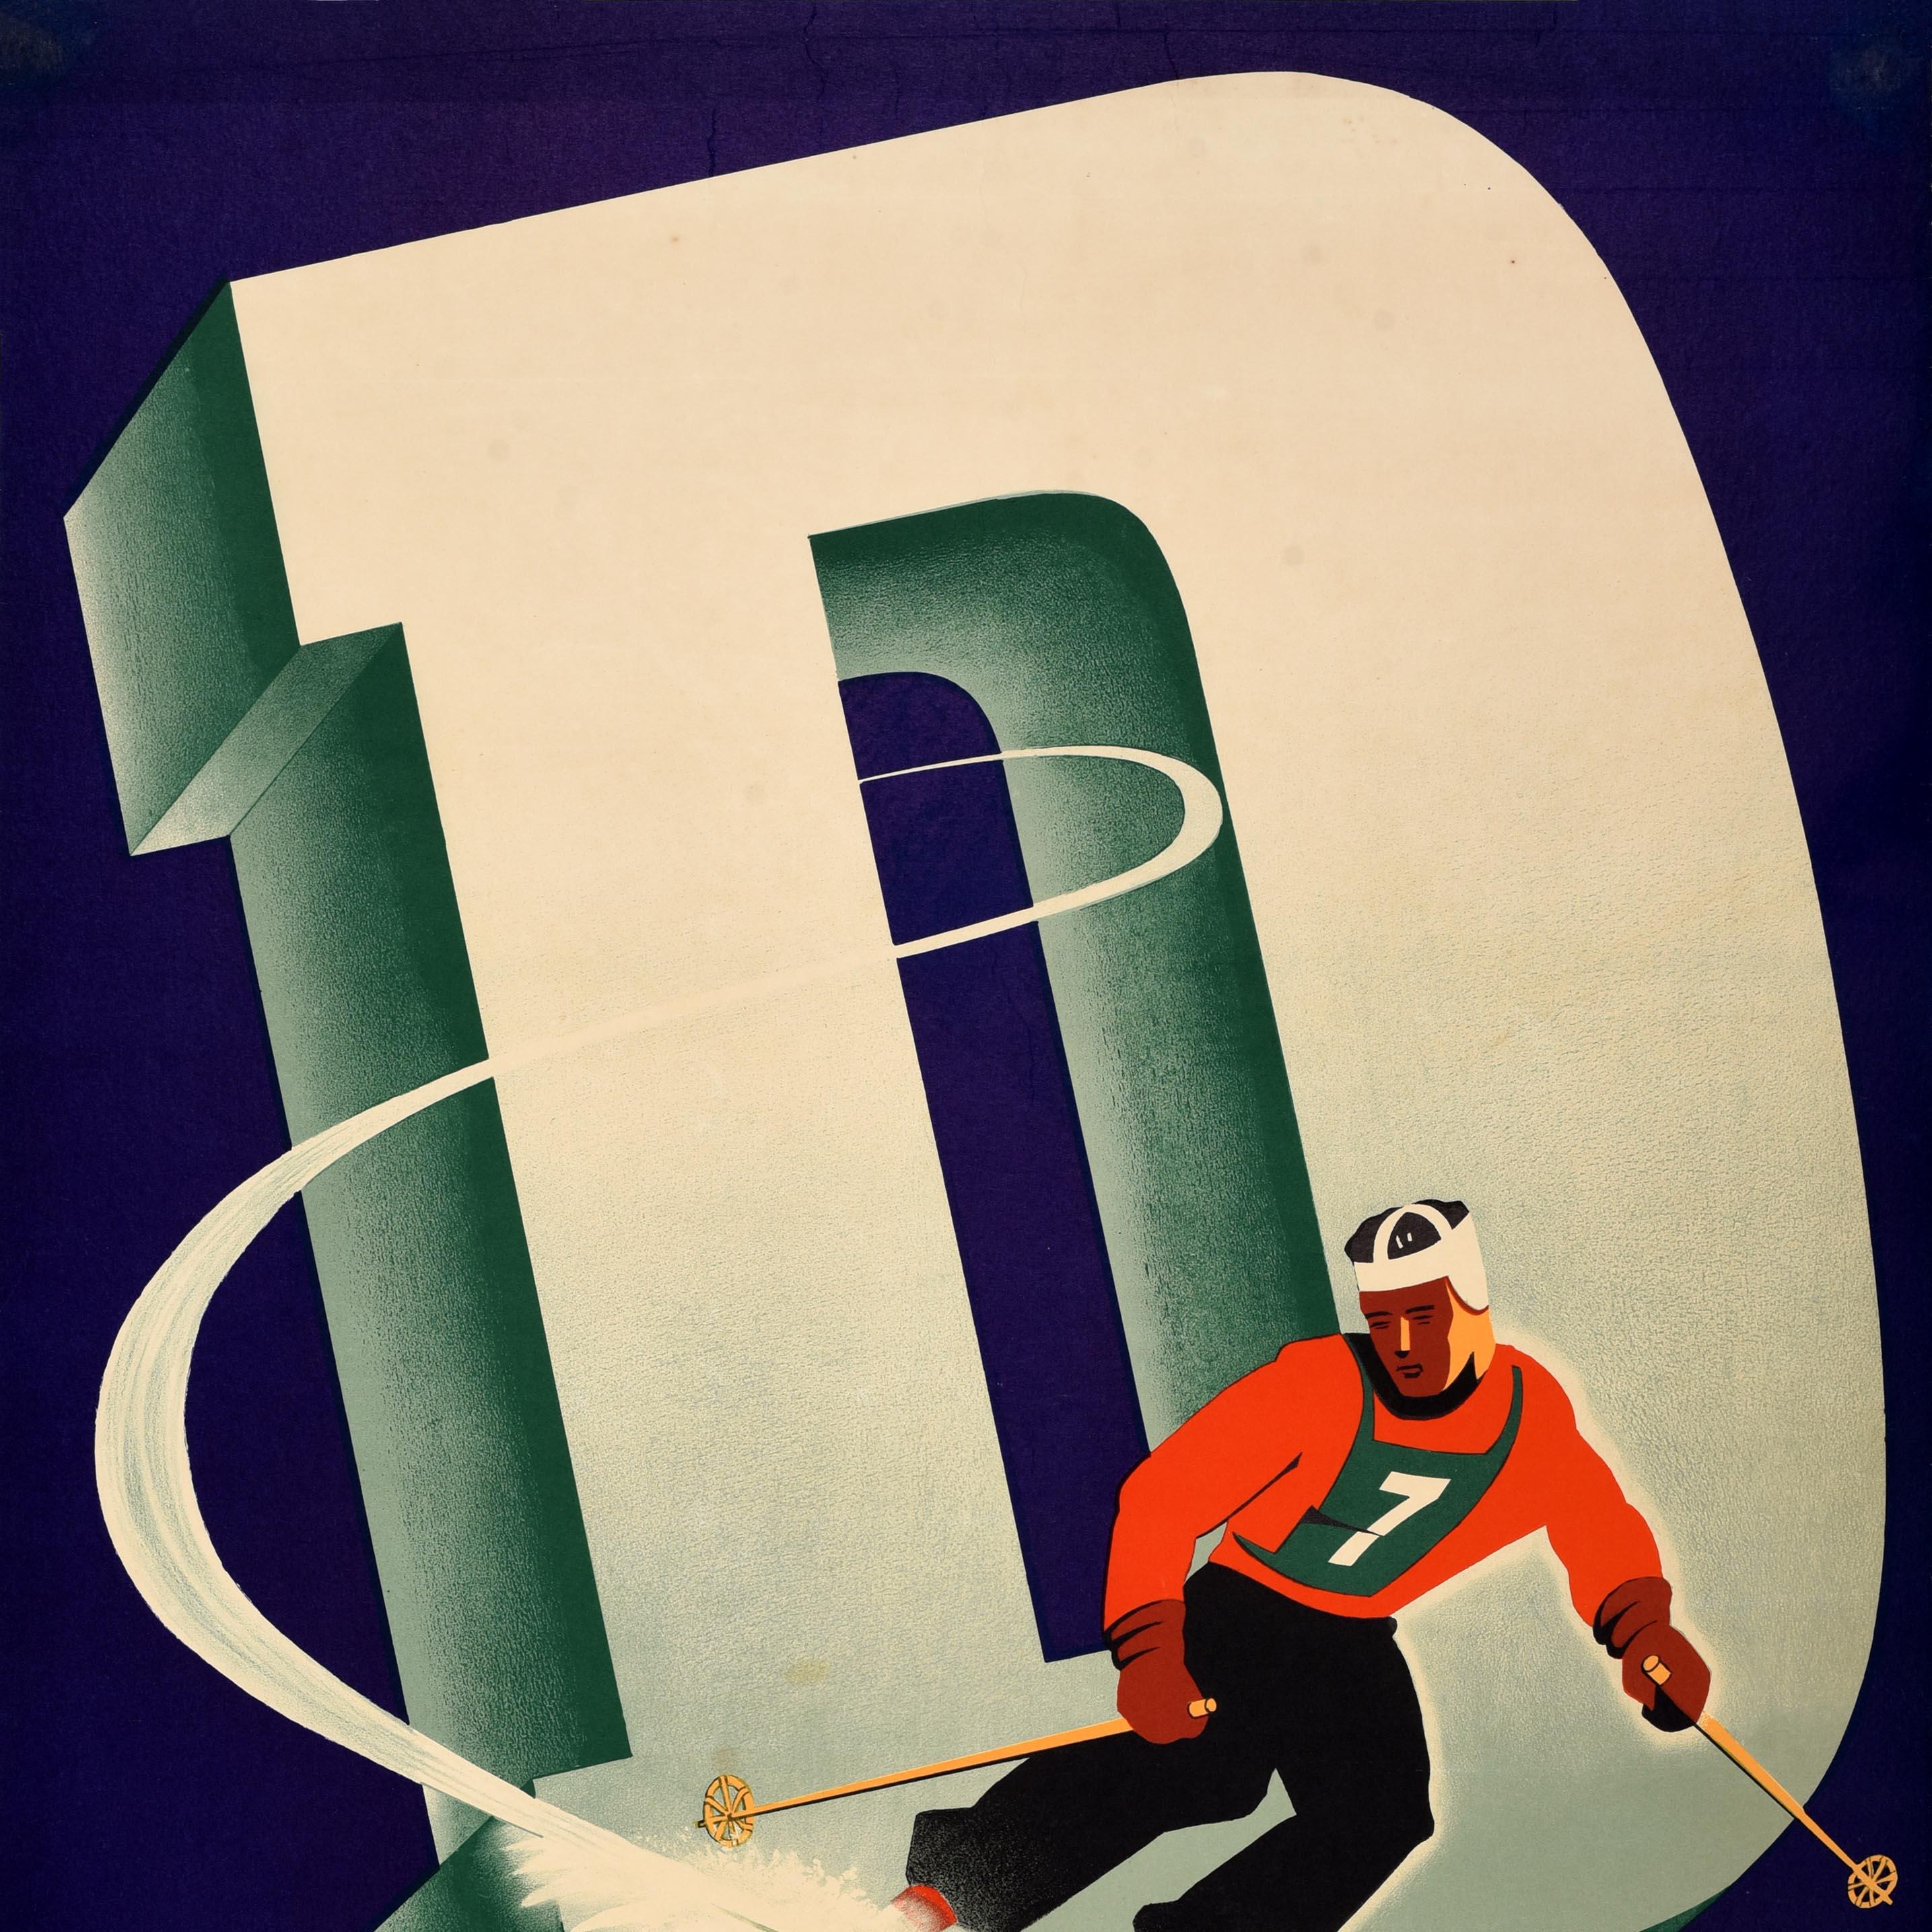 Original Vintage-Skiplakat für den Dartmouth Winter Carnival am 7-8 Februar 1941 mit einem dynamischen Design von Stanley Samuelson Pratt Institute zeigt einen Skifahrer trägt eine Nummer 7 bib und Helm Skifahren bei der Geschwindigkeit durch große